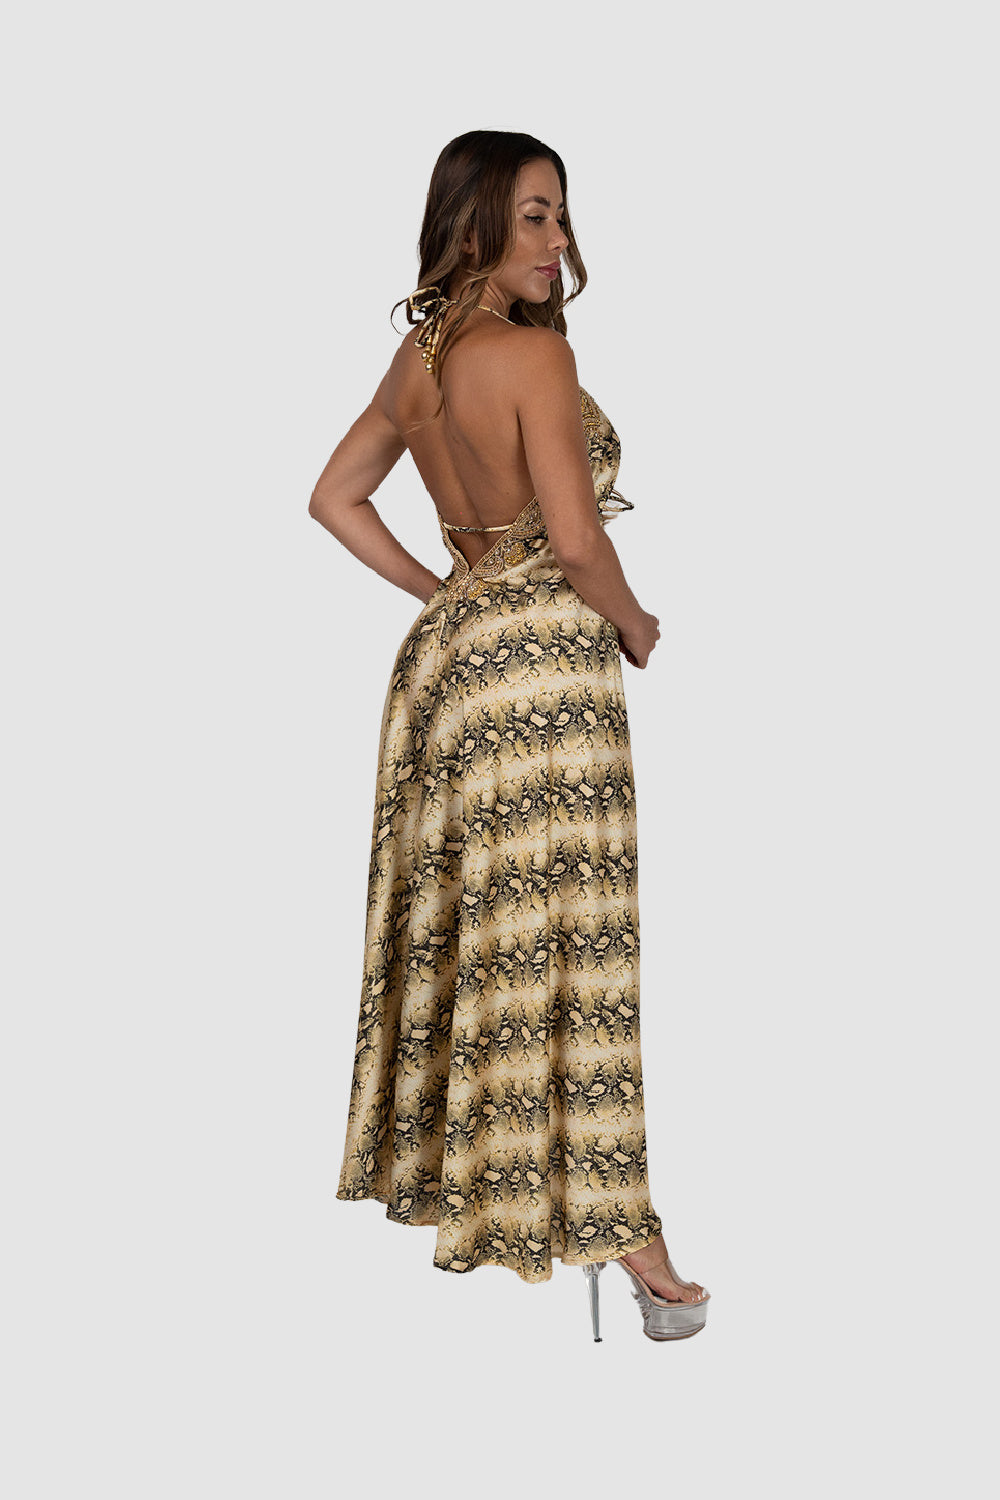 Jsquad Gold Snake Dress